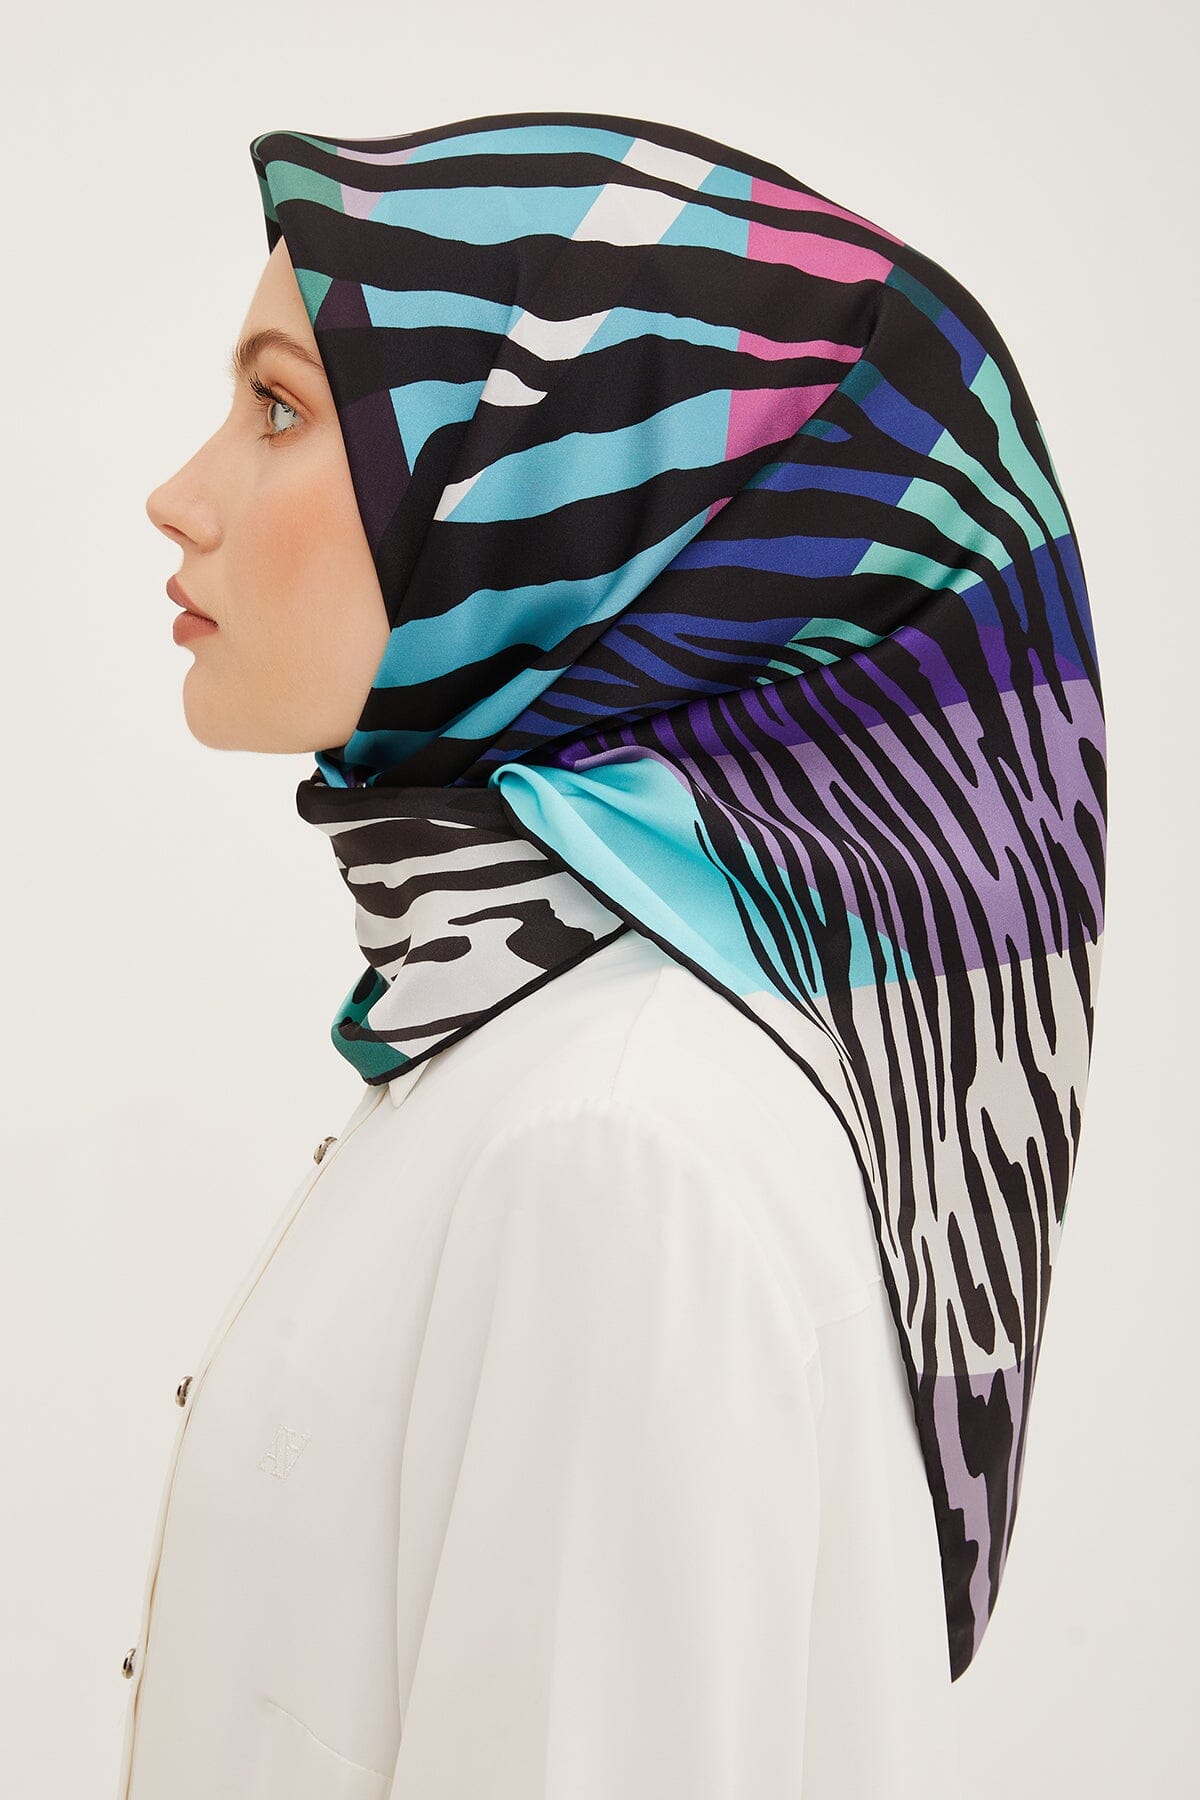 Armine Empower Women Silk Scarf #50 Silk Hijabs,Armine Armine 